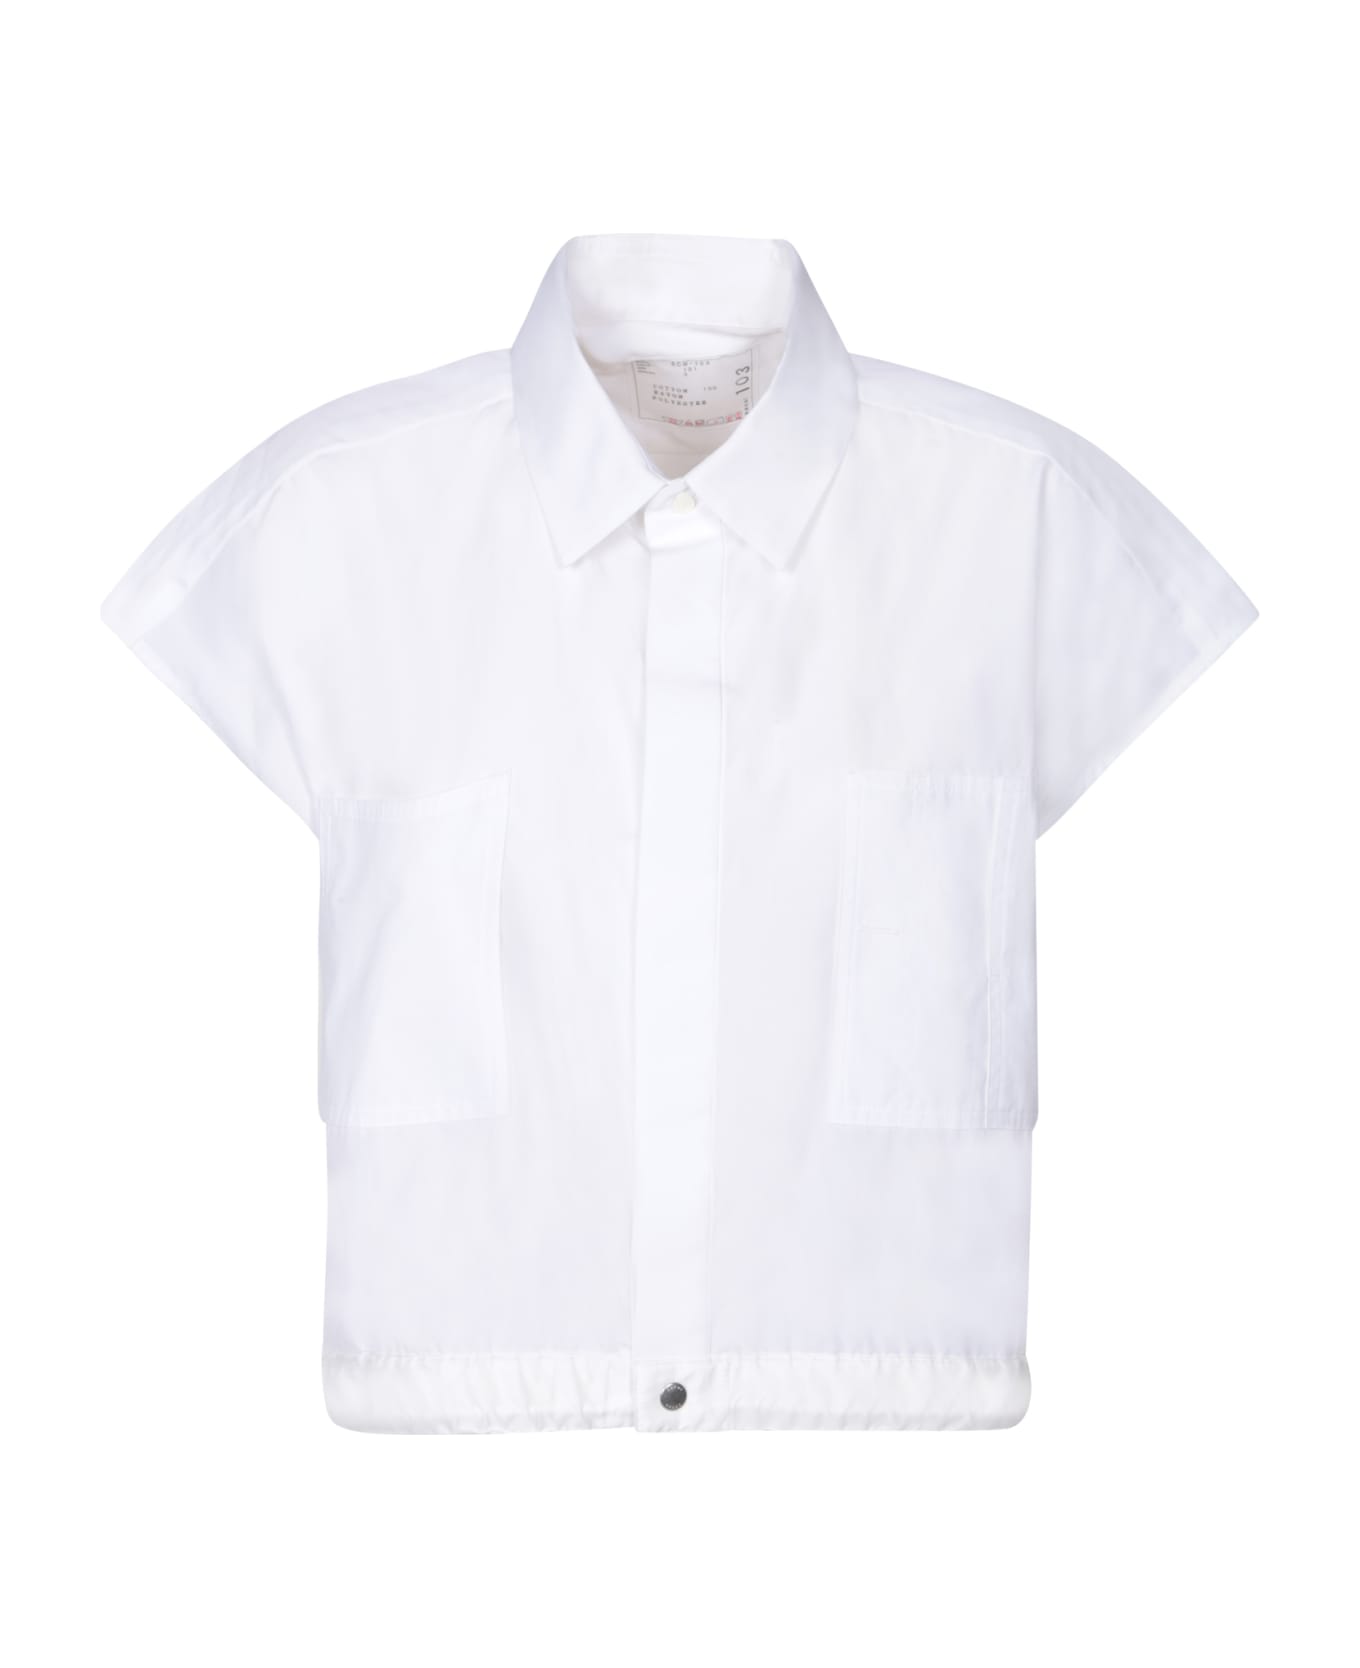 Sacai Thomas White Shirt - White シャツ